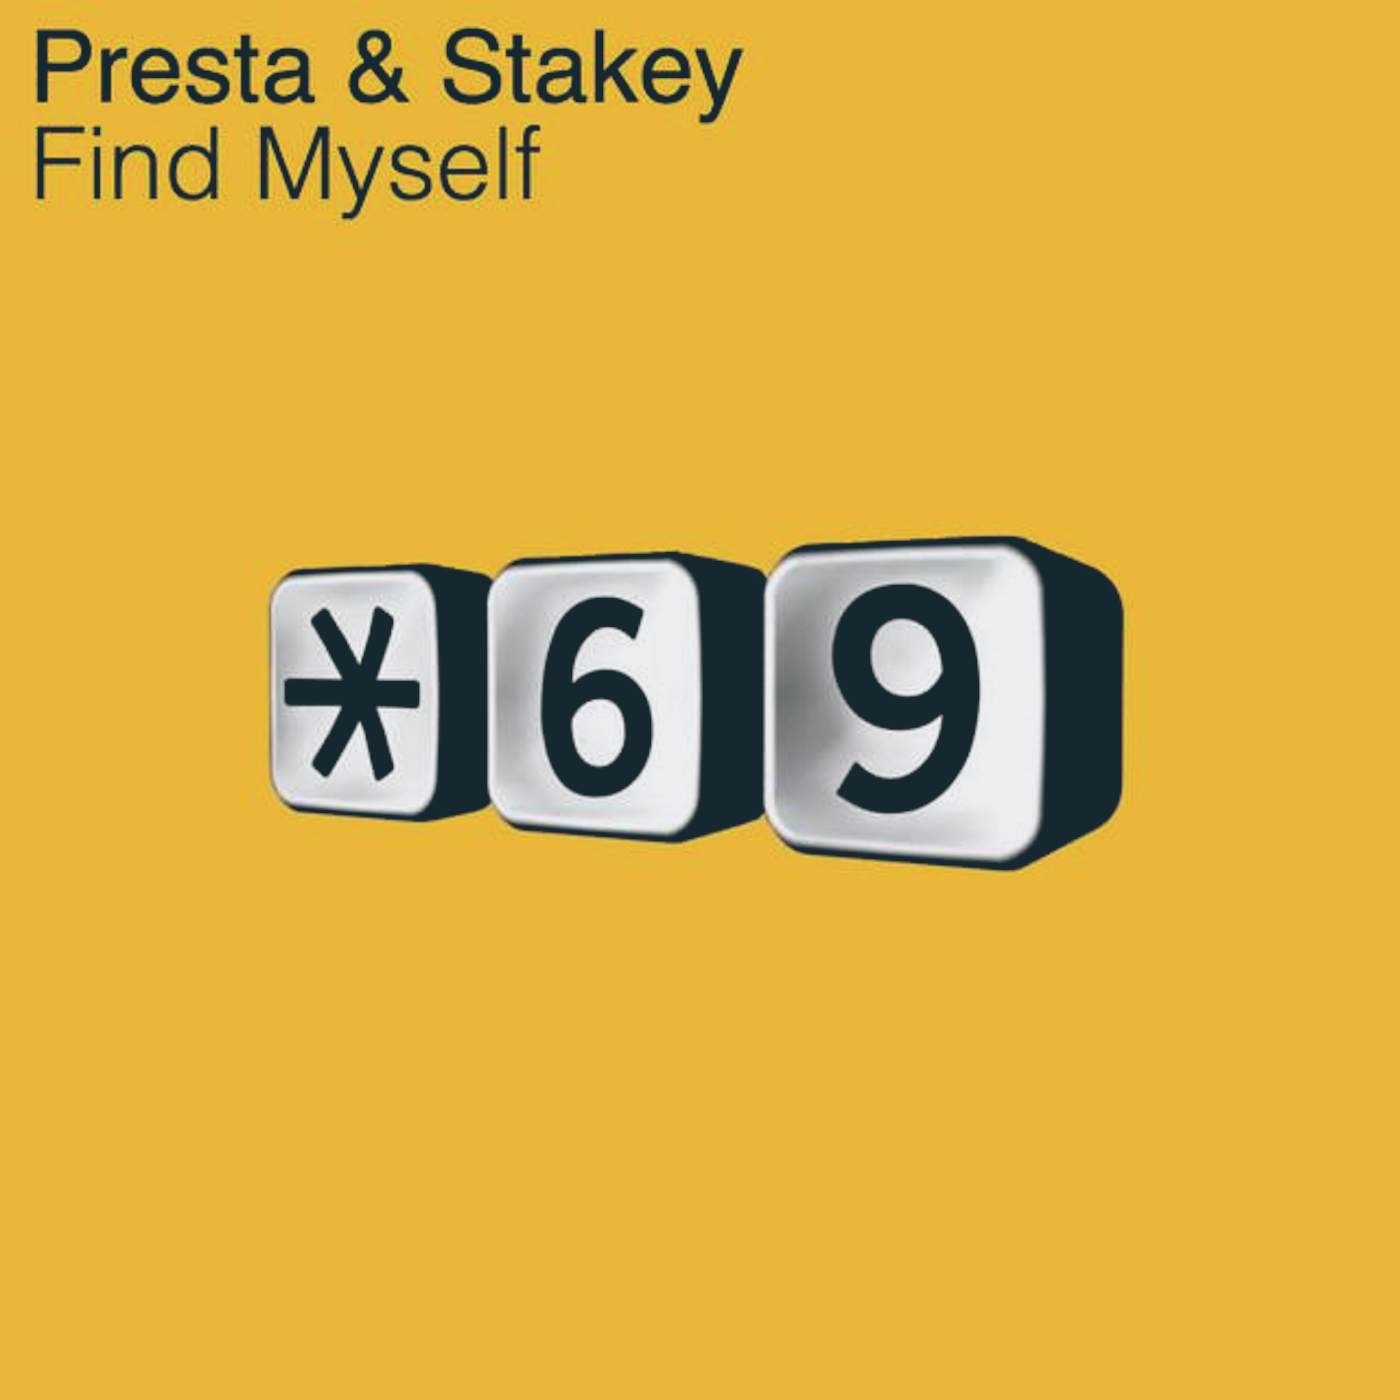 Presta & Stakey